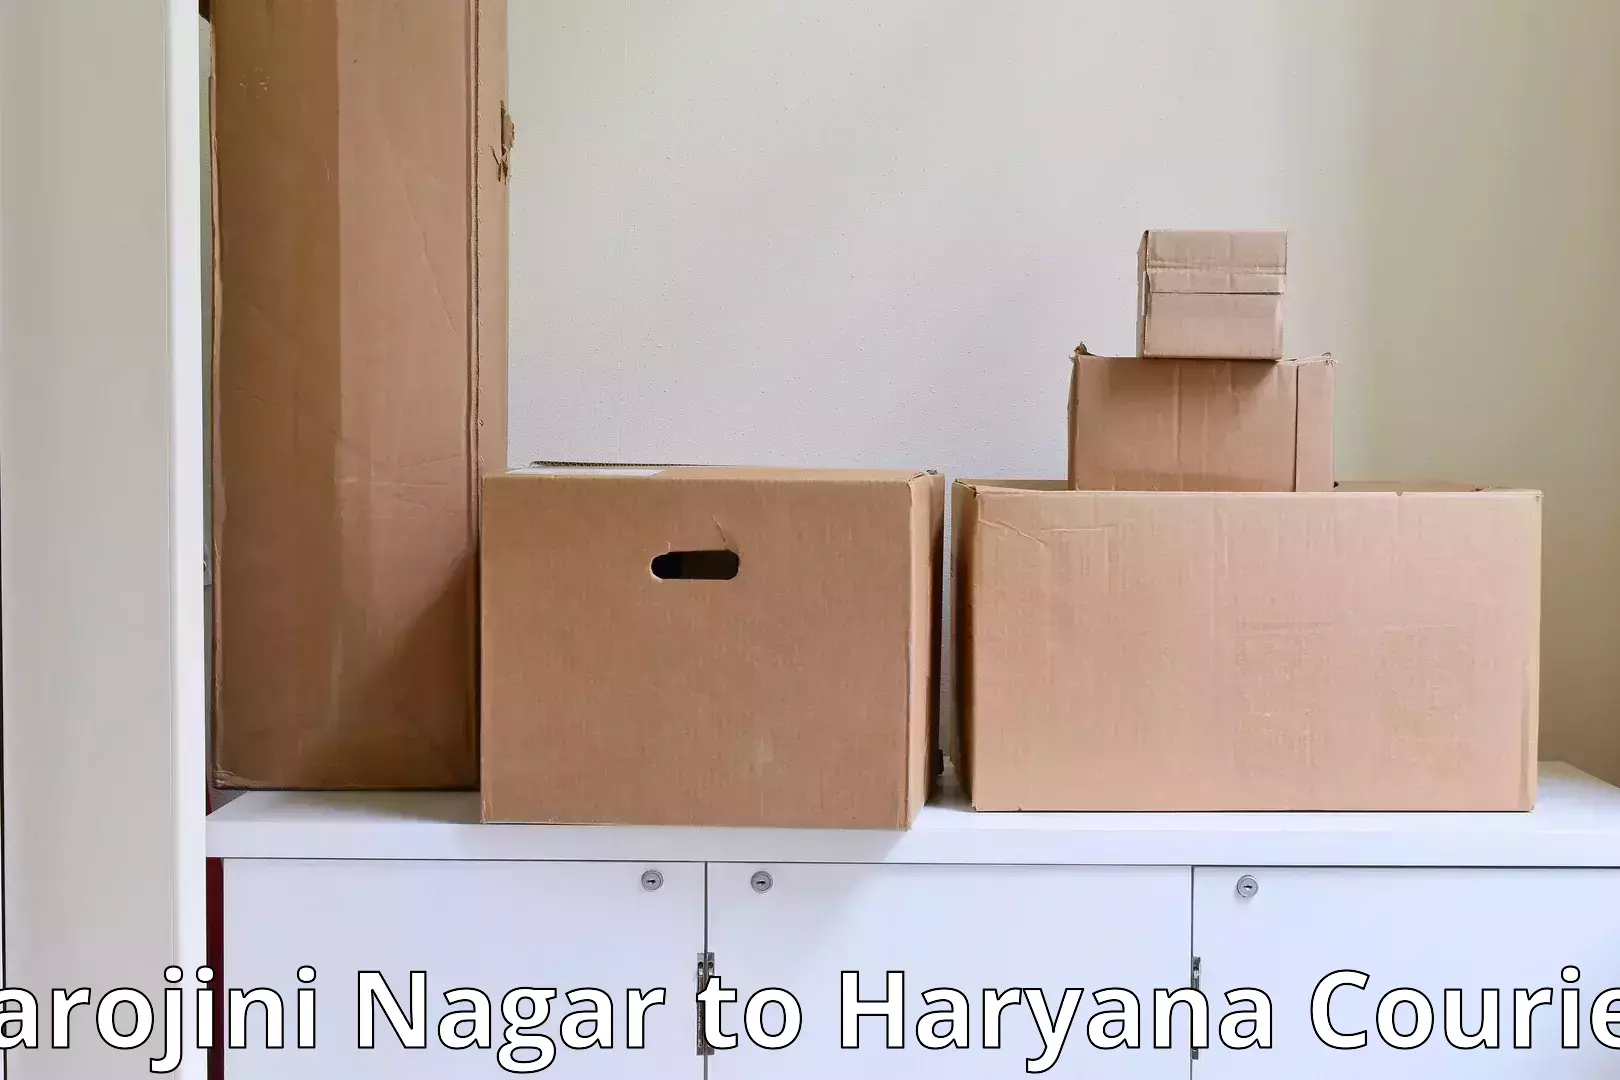 Local household movers Sarojini Nagar to NCR Haryana